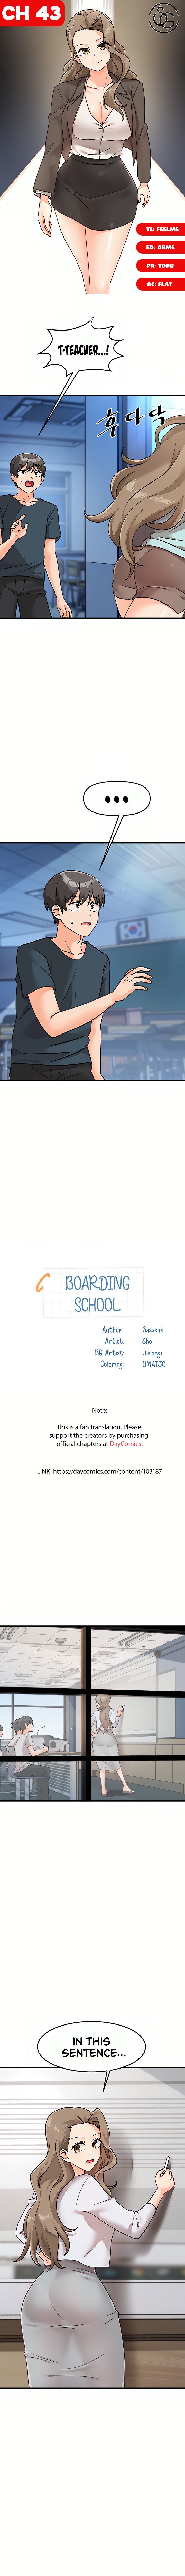 boarding-school-chap-43-0